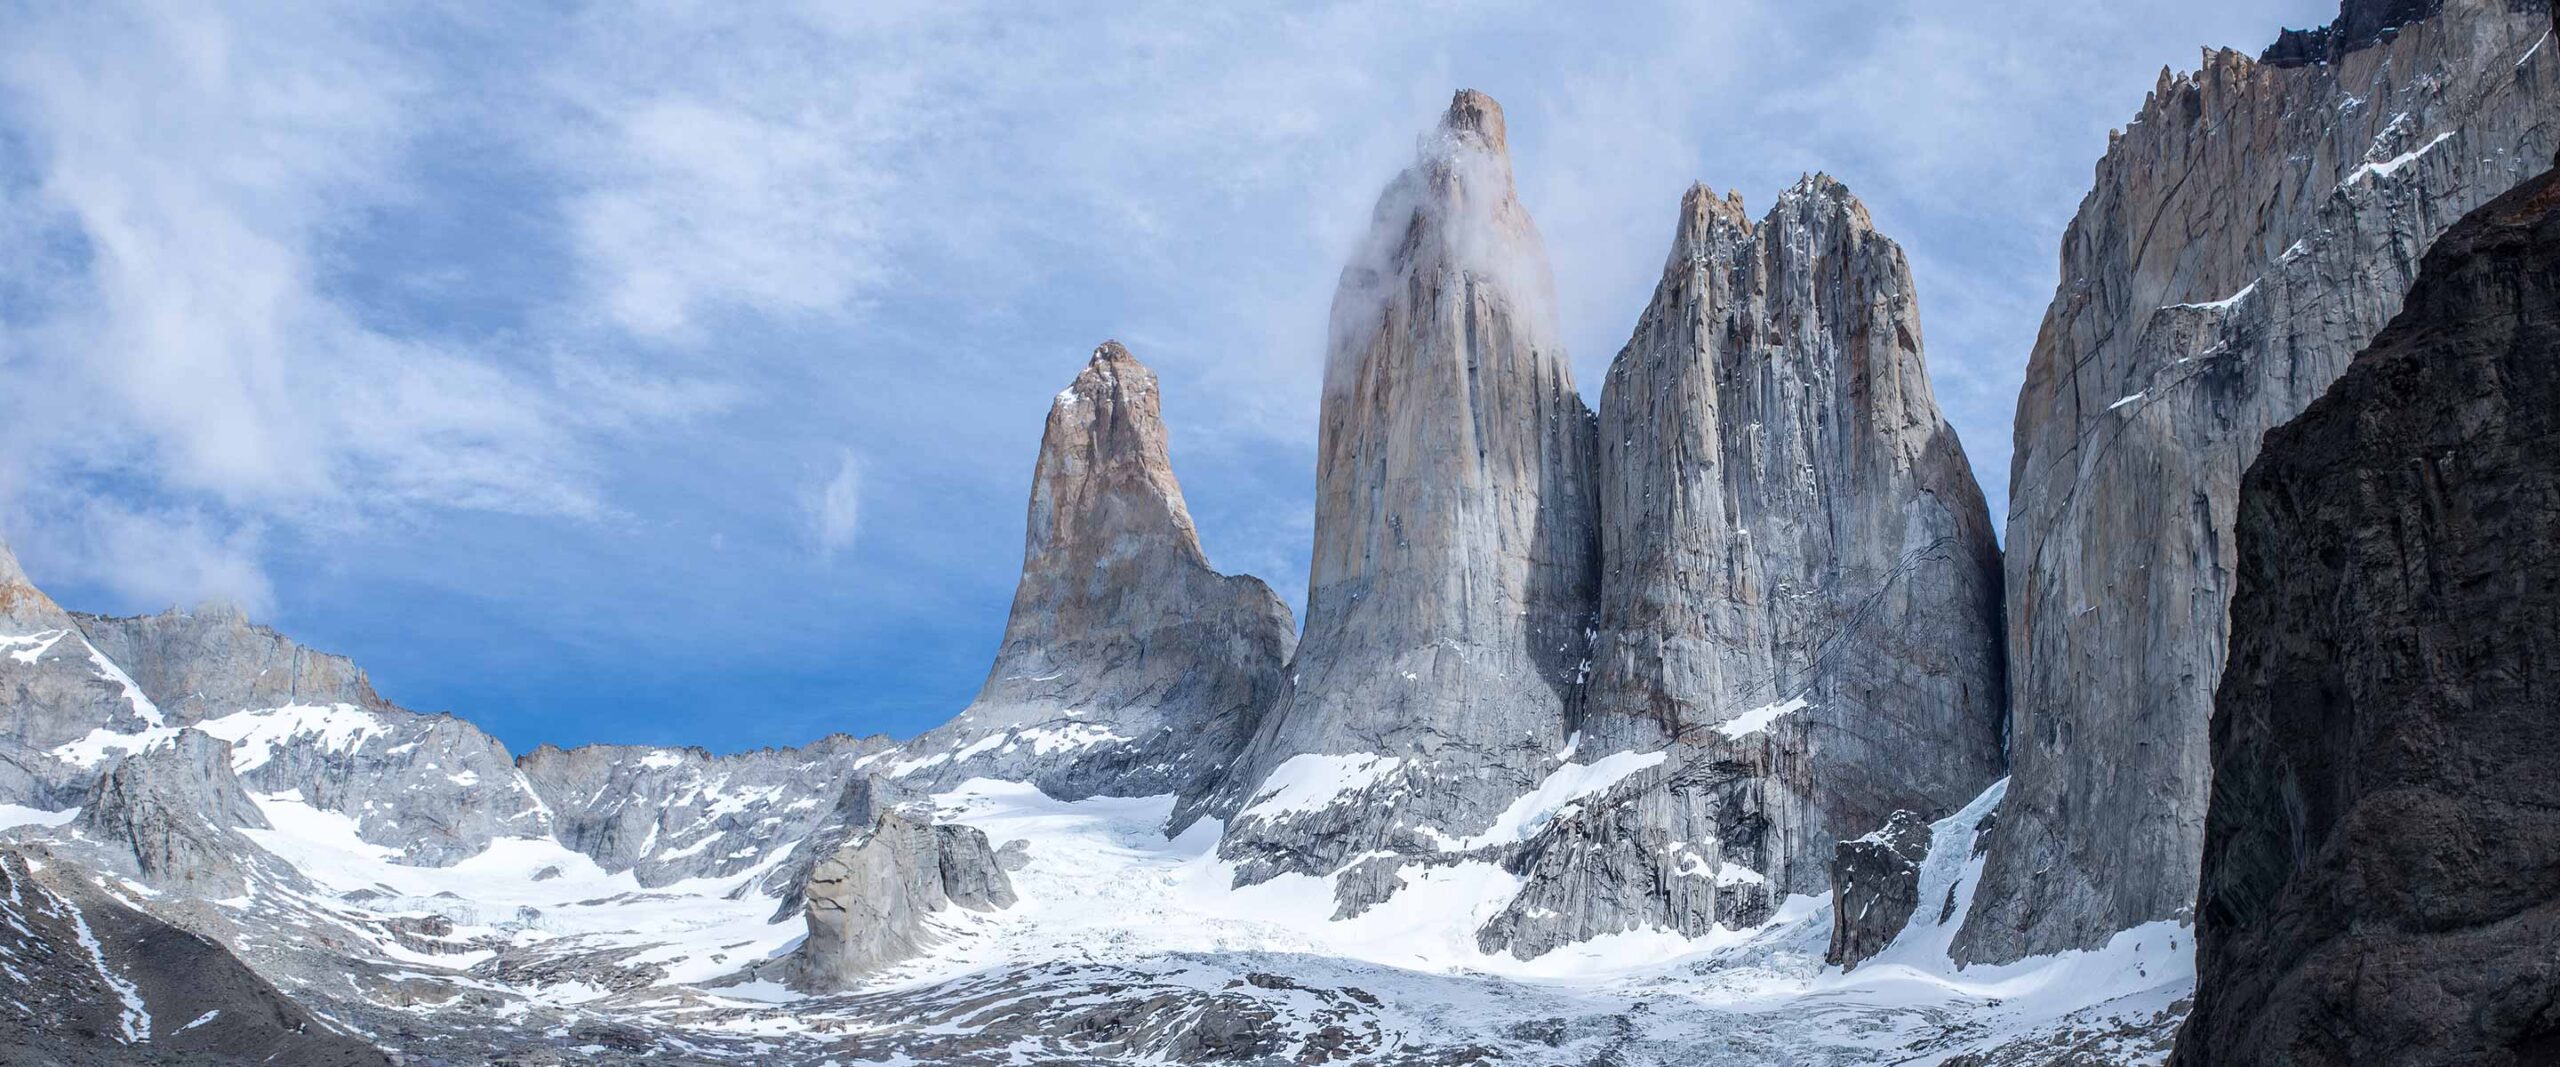 Torres del Paine Chile